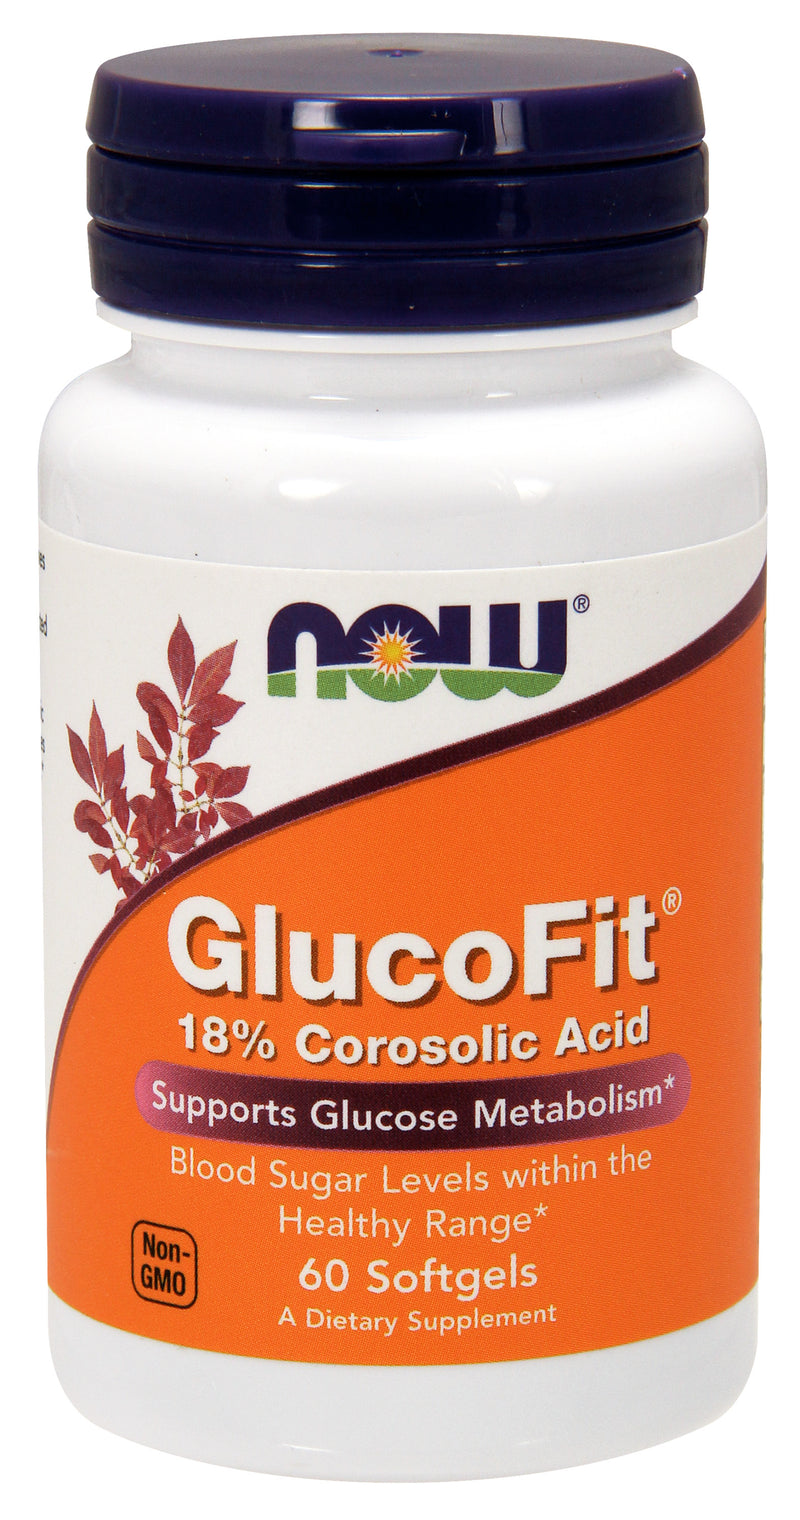 GlucoFit 60 Softgels